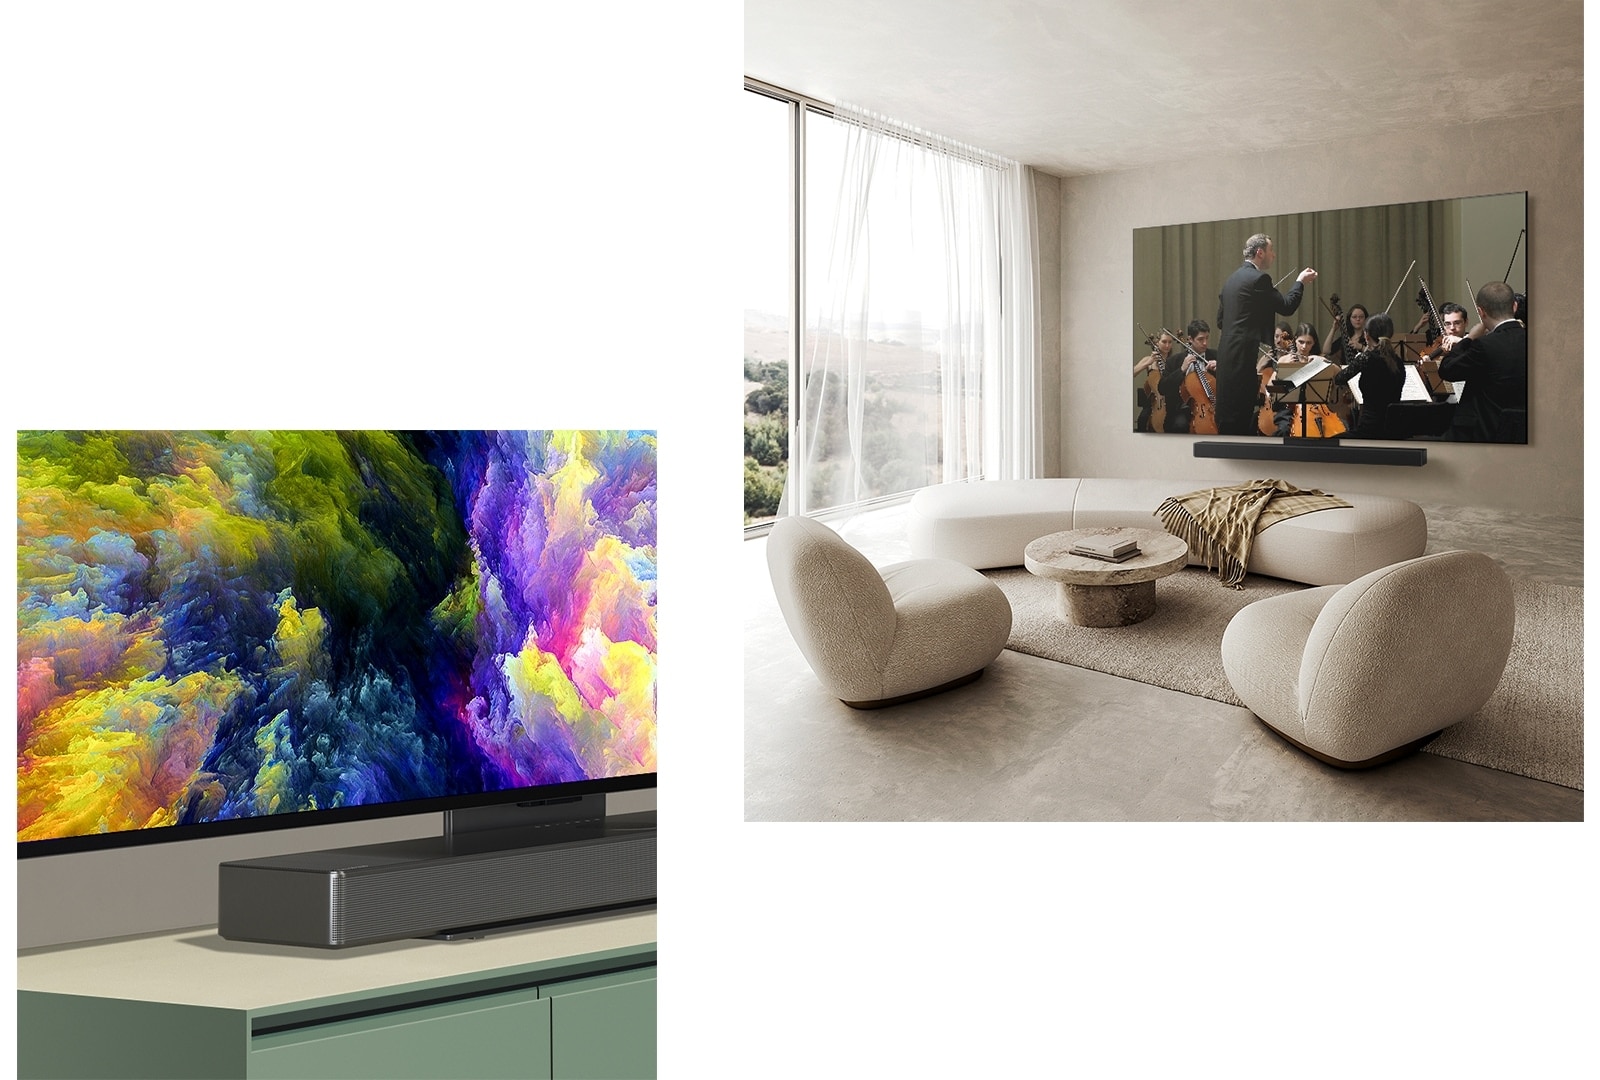 "Eine schräge Perspektive der unteren Ecke eines LG OLED evo TV C4 mit einem abstrakten Kunstwerk auf dem Bildschirm. Der OLED evo C4 und eine LG Soundbar in einem sauberen Wohnraum flach an der Wand mit einer Orchesteraufführung auf dem Bildschirm." 